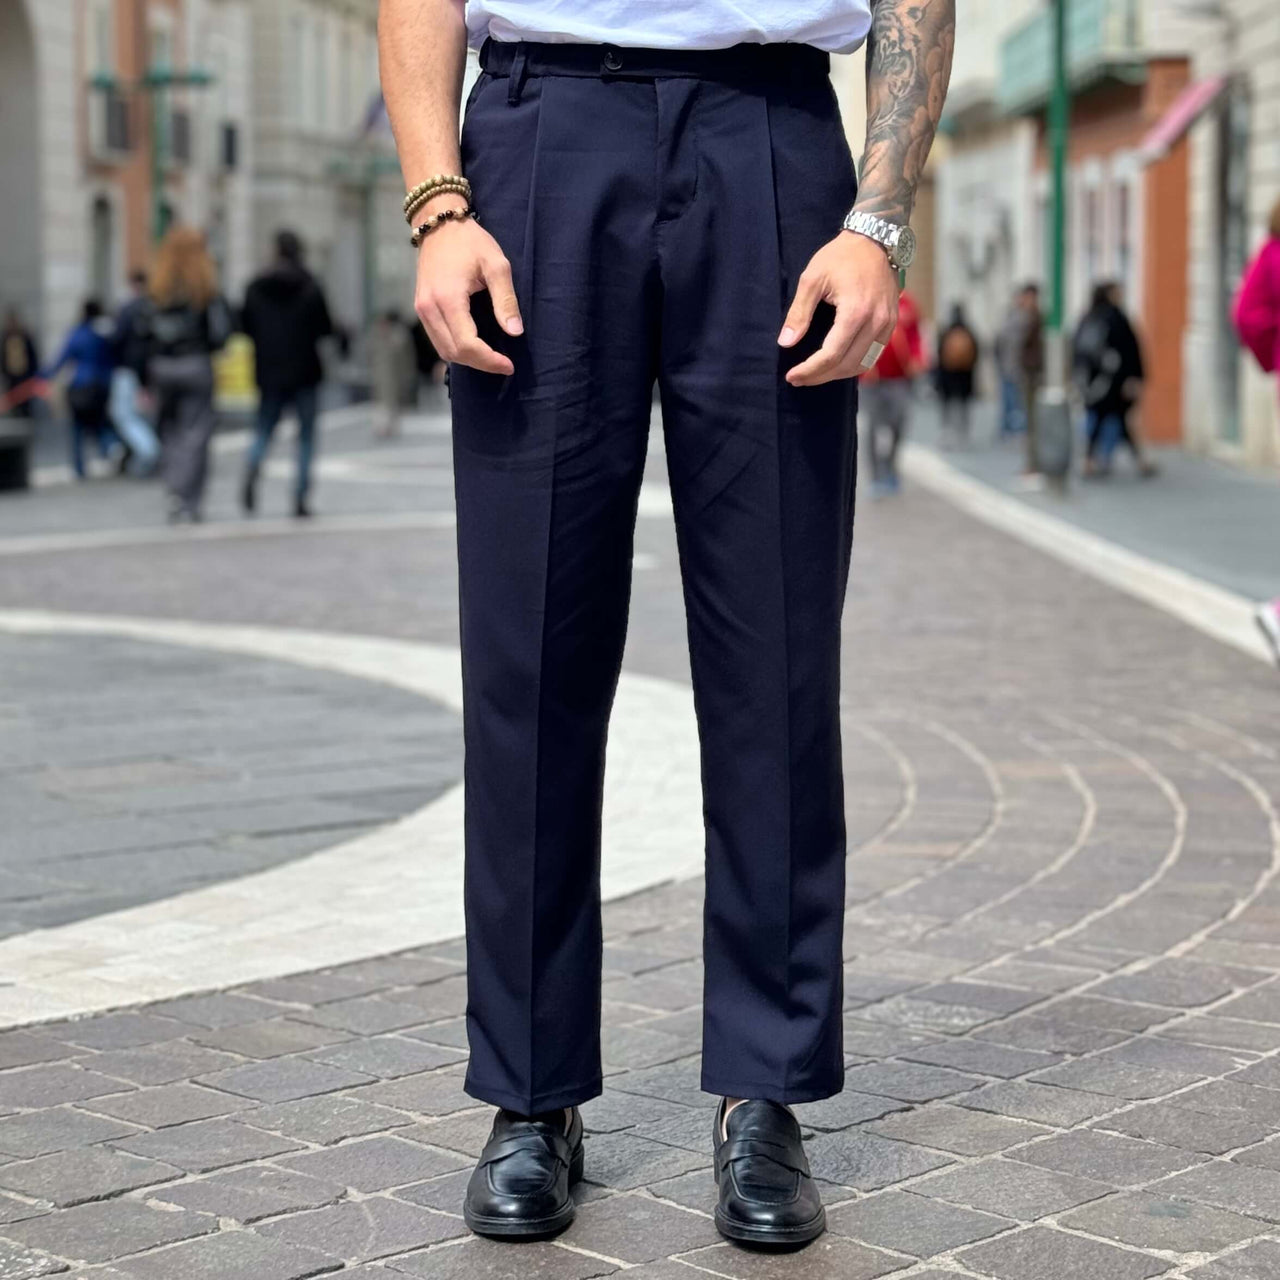 Pantalone gamba larga blu navy - FLAG STORE